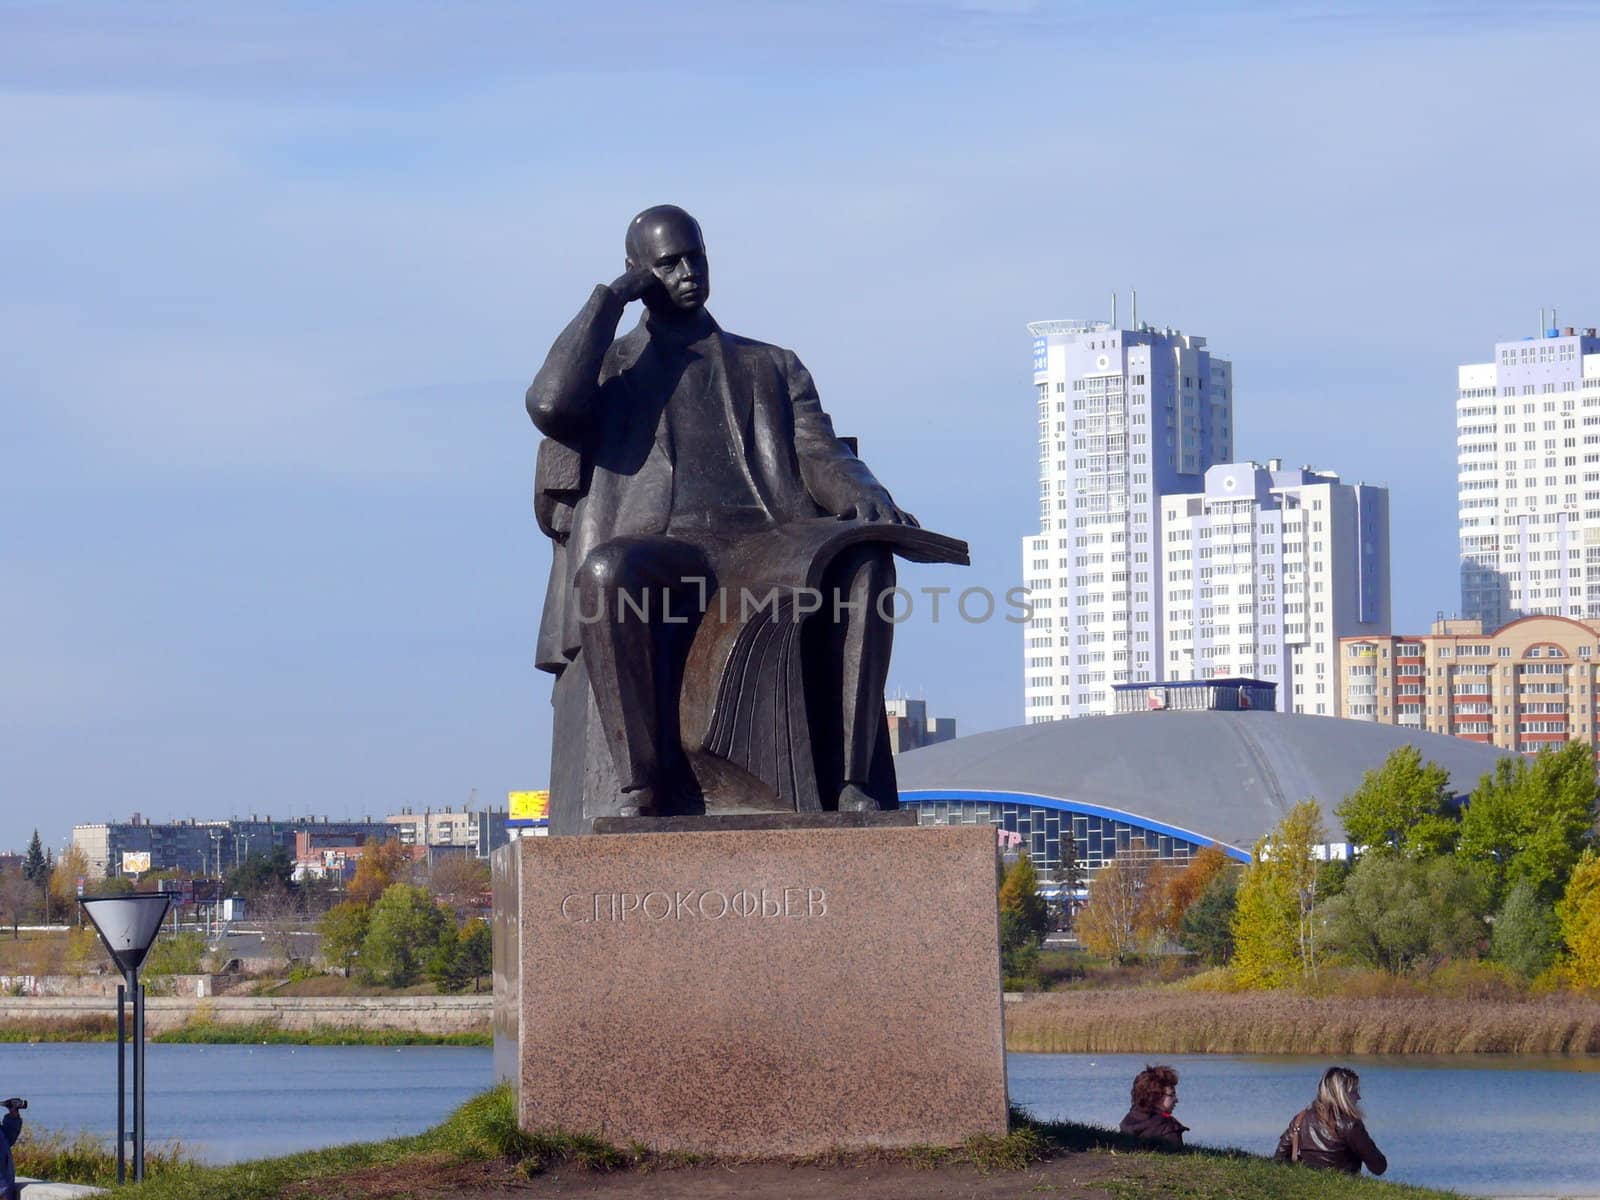 Monument of Sergey Prokofiev - Chelyabinsk